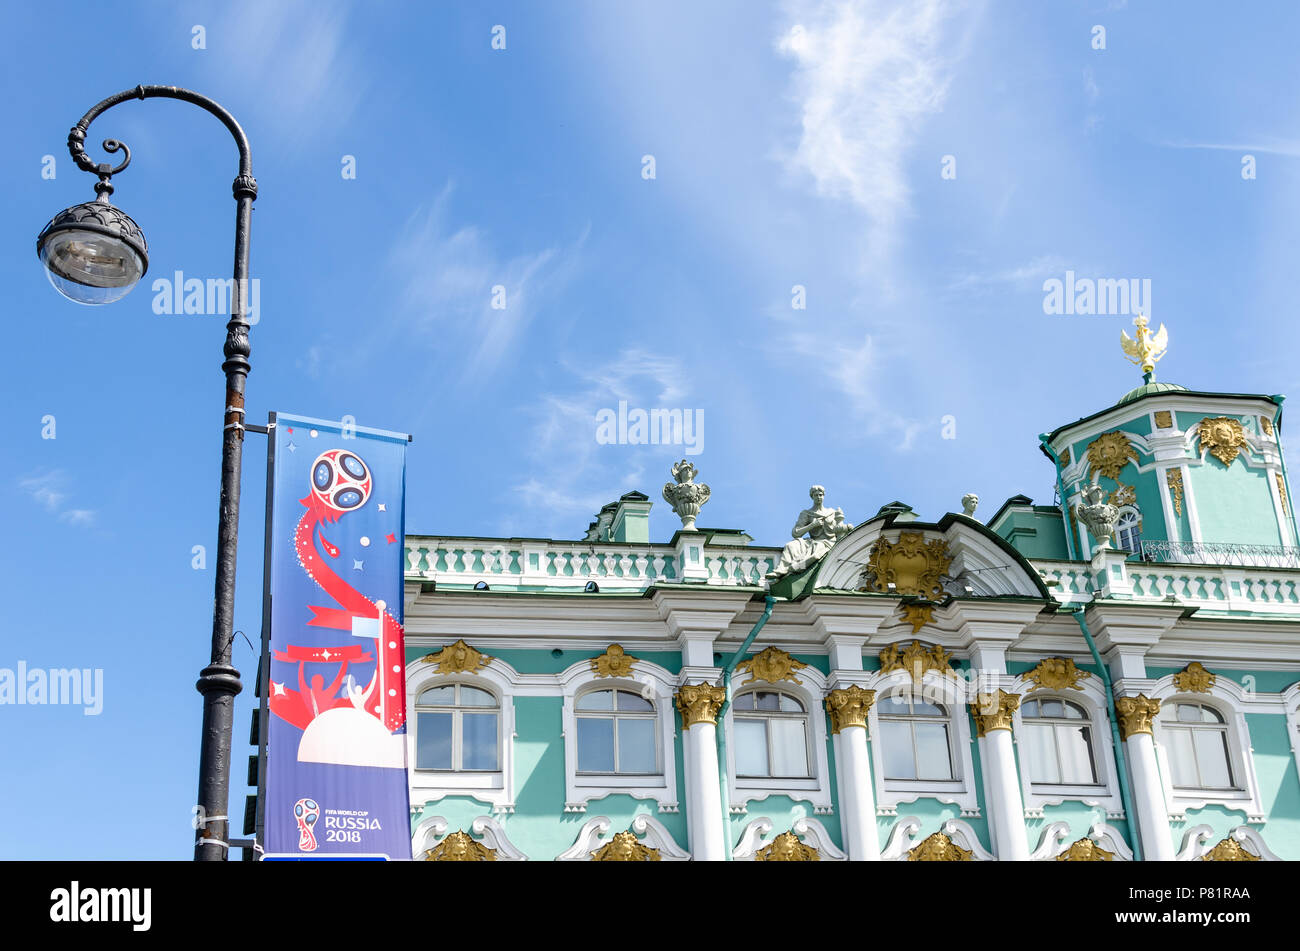 Oficial de la Copa Mundial de la Fifa 2018 banner por el Palacio de Invierno y del Museo del Hermitage, en San Petersburgo, Rusia Foto de stock